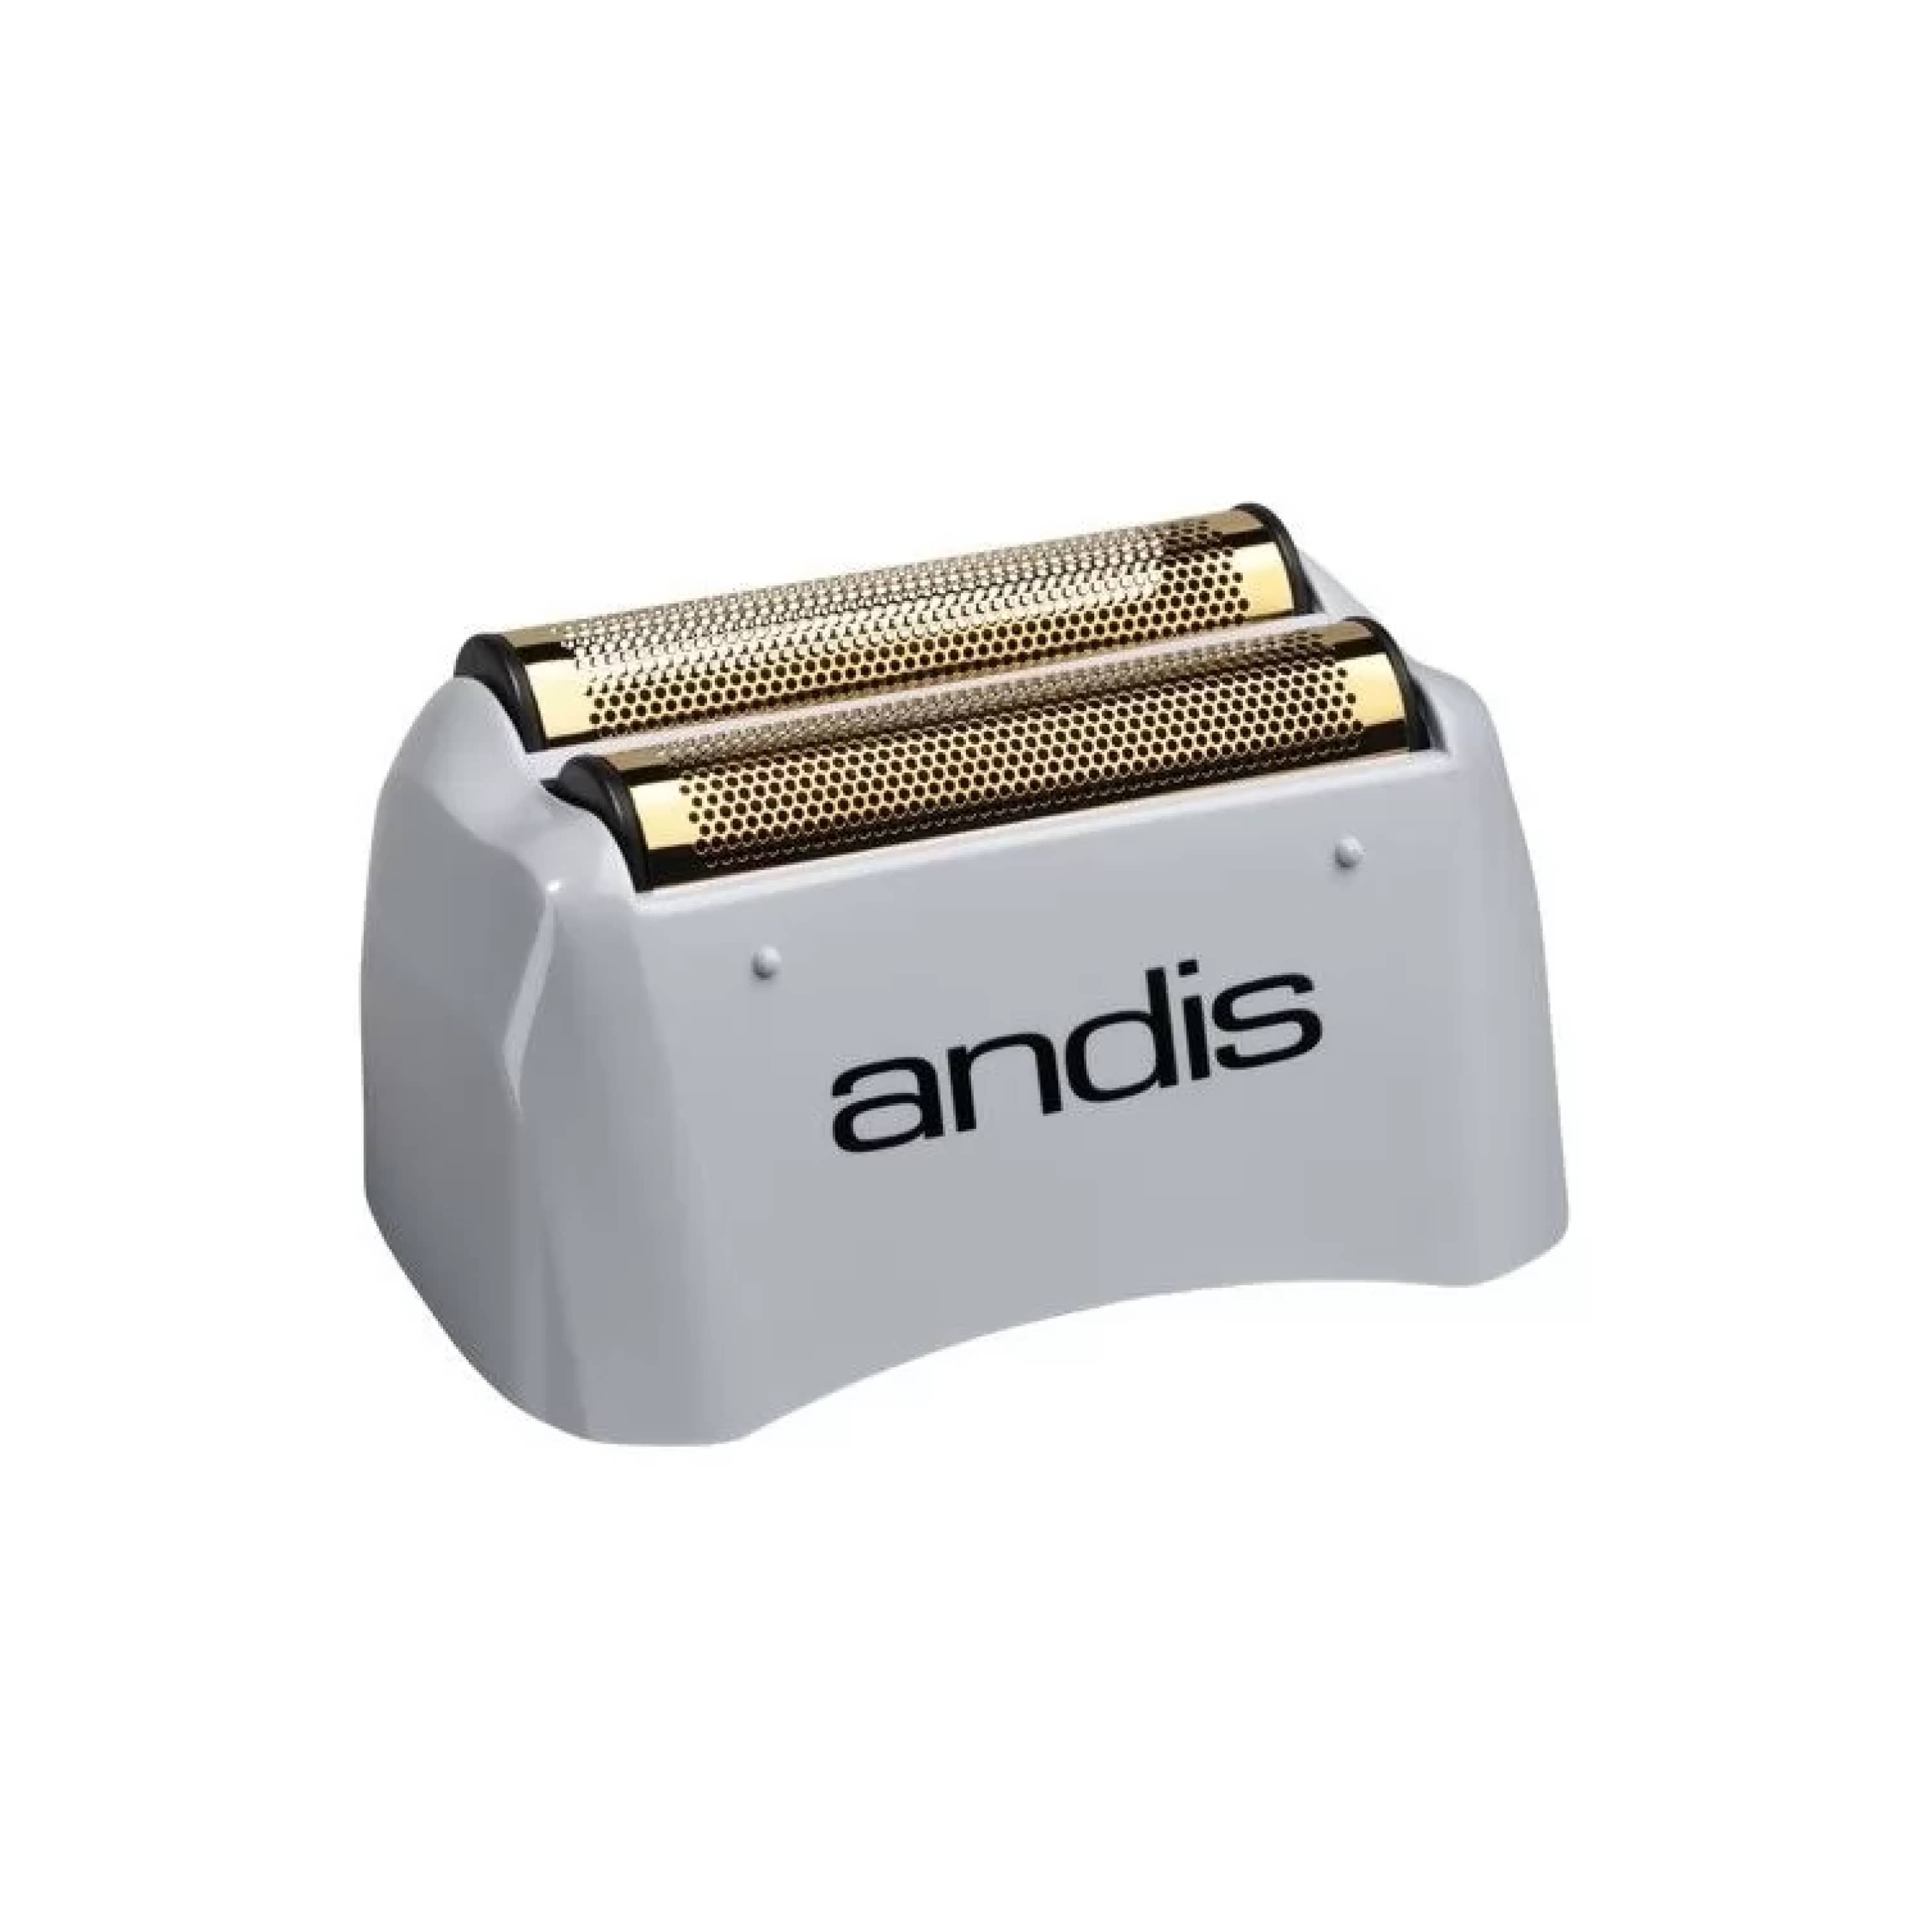 Змінна сітка для шейвера Andis Shaver TS-1/2-AC00004-Andis-Blade Runner Shop | Інтернет-магазин інструментів для перукарів (1)